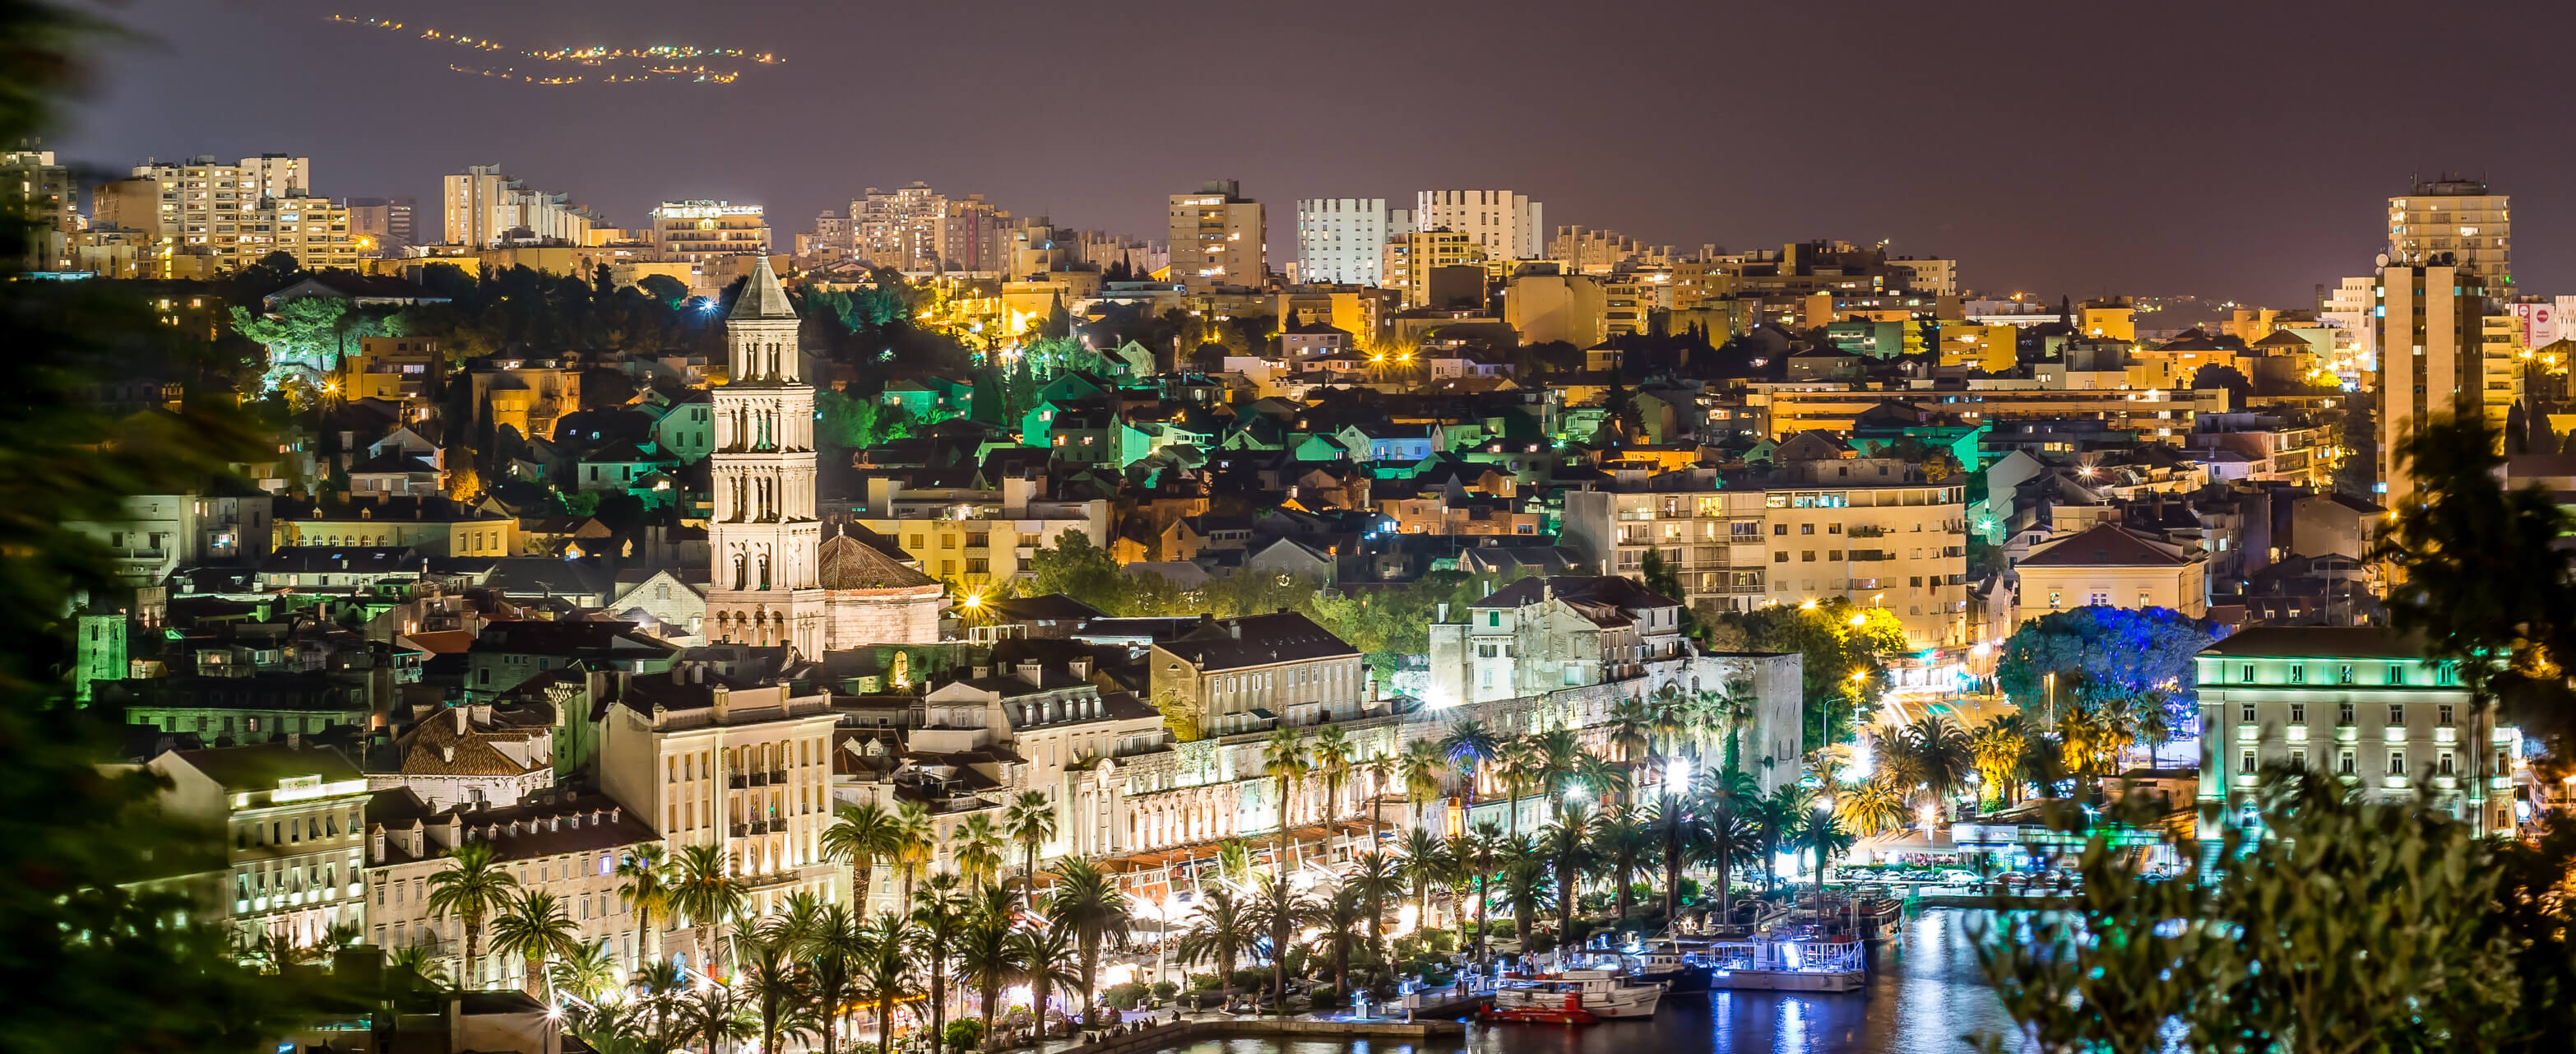 Night panorama of town Split in Croatia